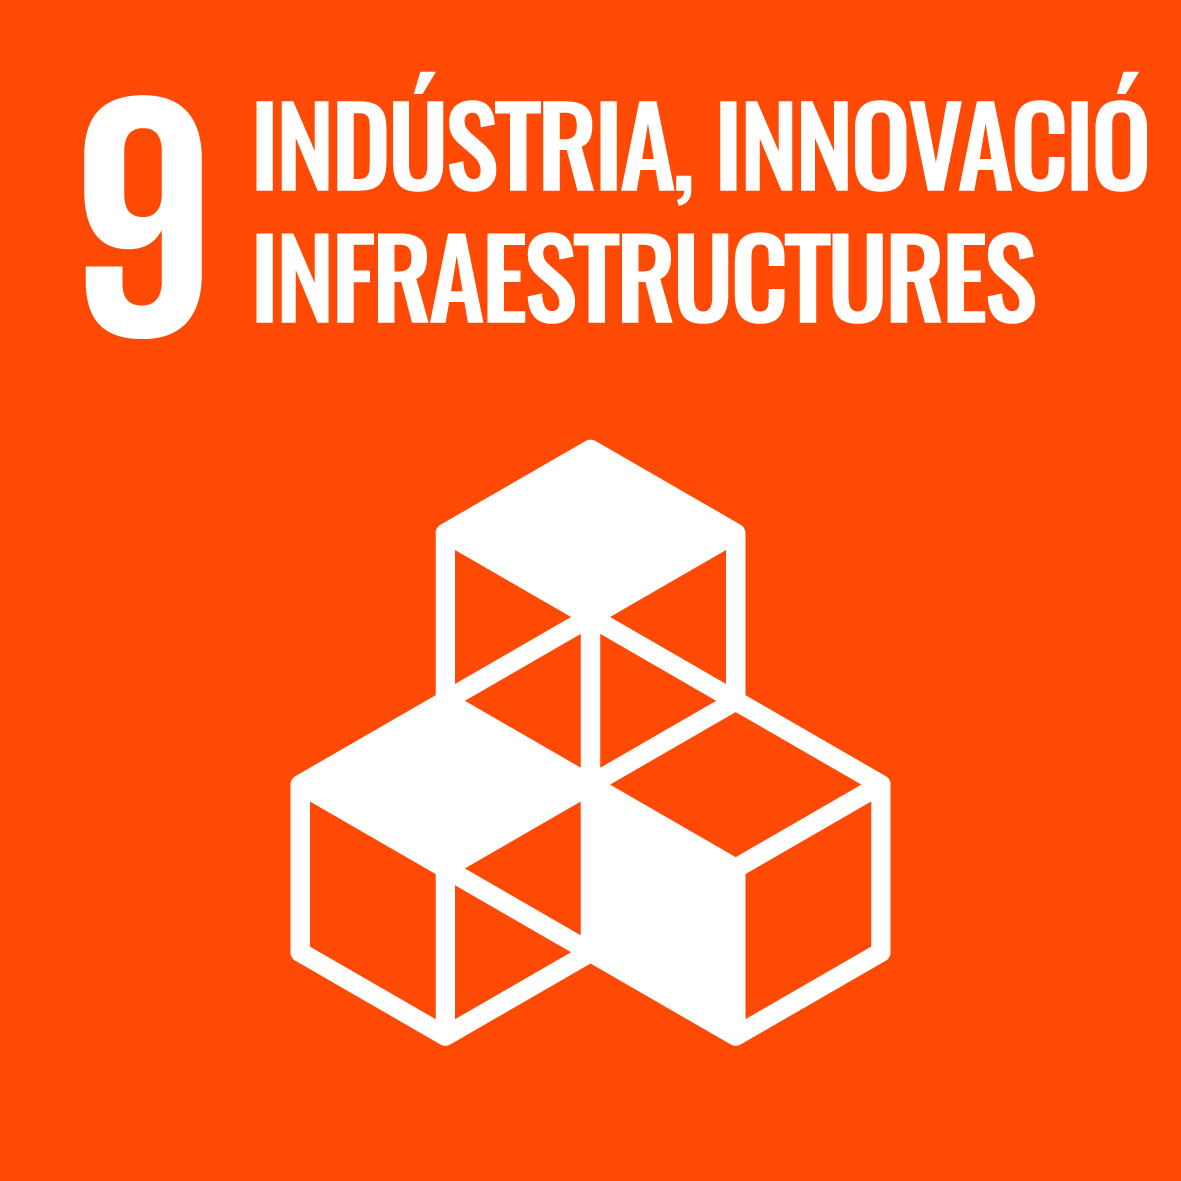 Objectiu 9: Construir infraestructures resilients, promoure la industrialització inclusiva i sostenible i fomentar la innovació